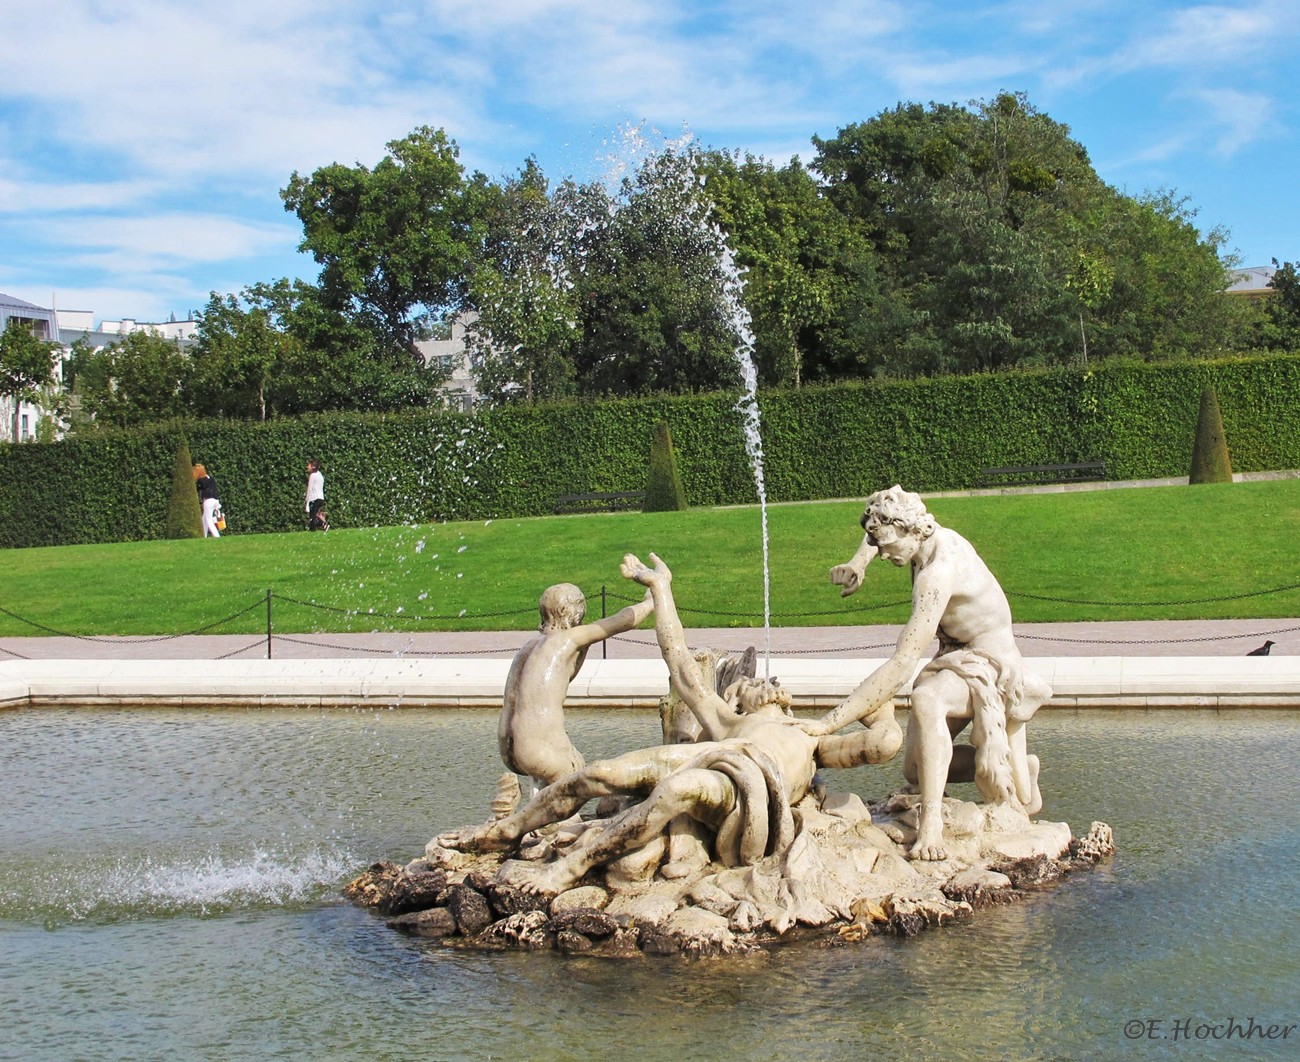 Belvedere-Brunnen im Schlosspark Belvedere in Wien